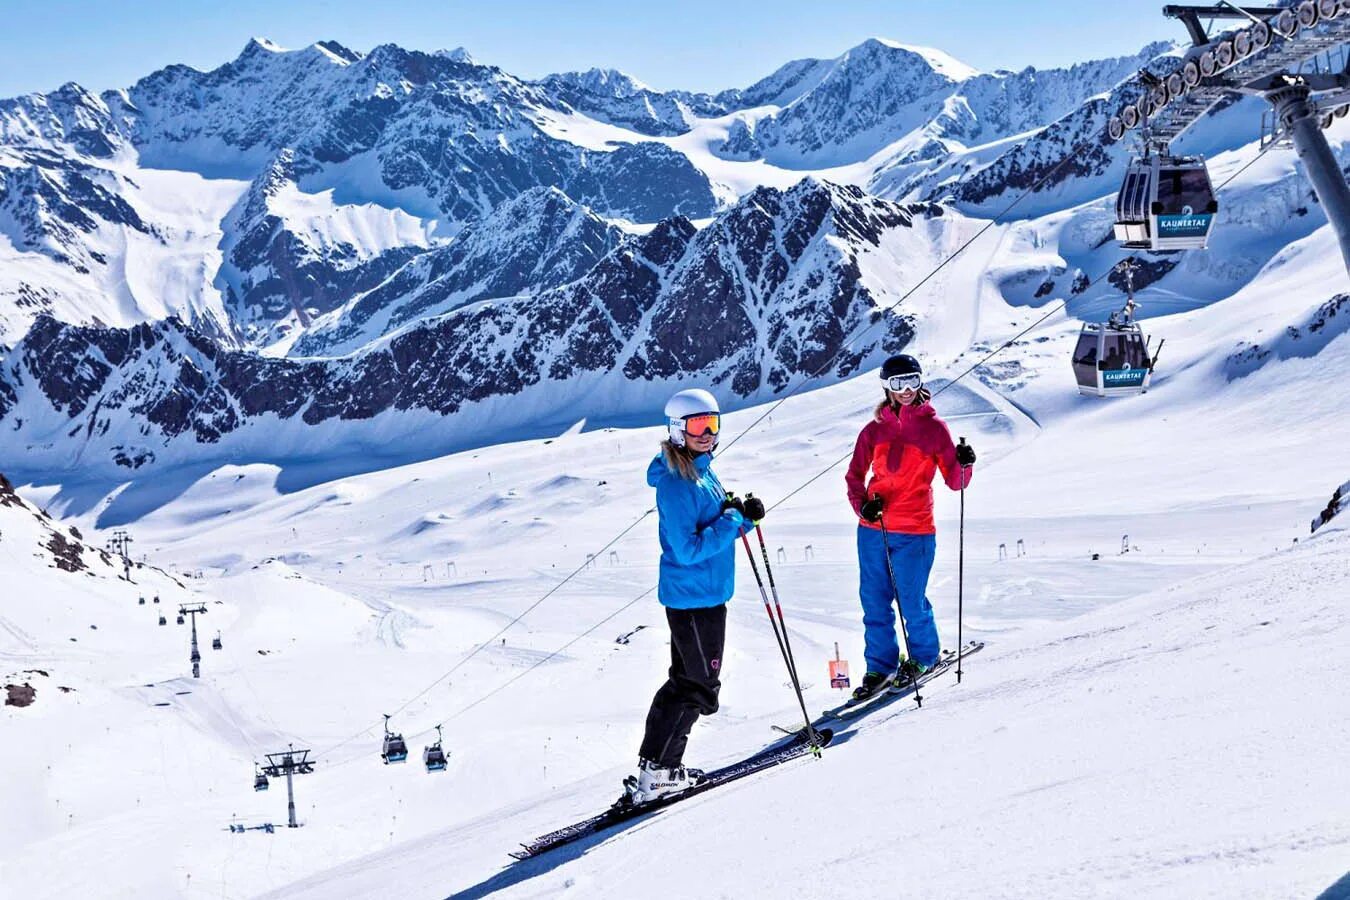 Самый высокий горнолыжный курорт. Лех Австрия горнолыжный курорт. Каунерталь Австрия ледник. Австрия Альпы горнолыжные курорты. Австрия лыжи.